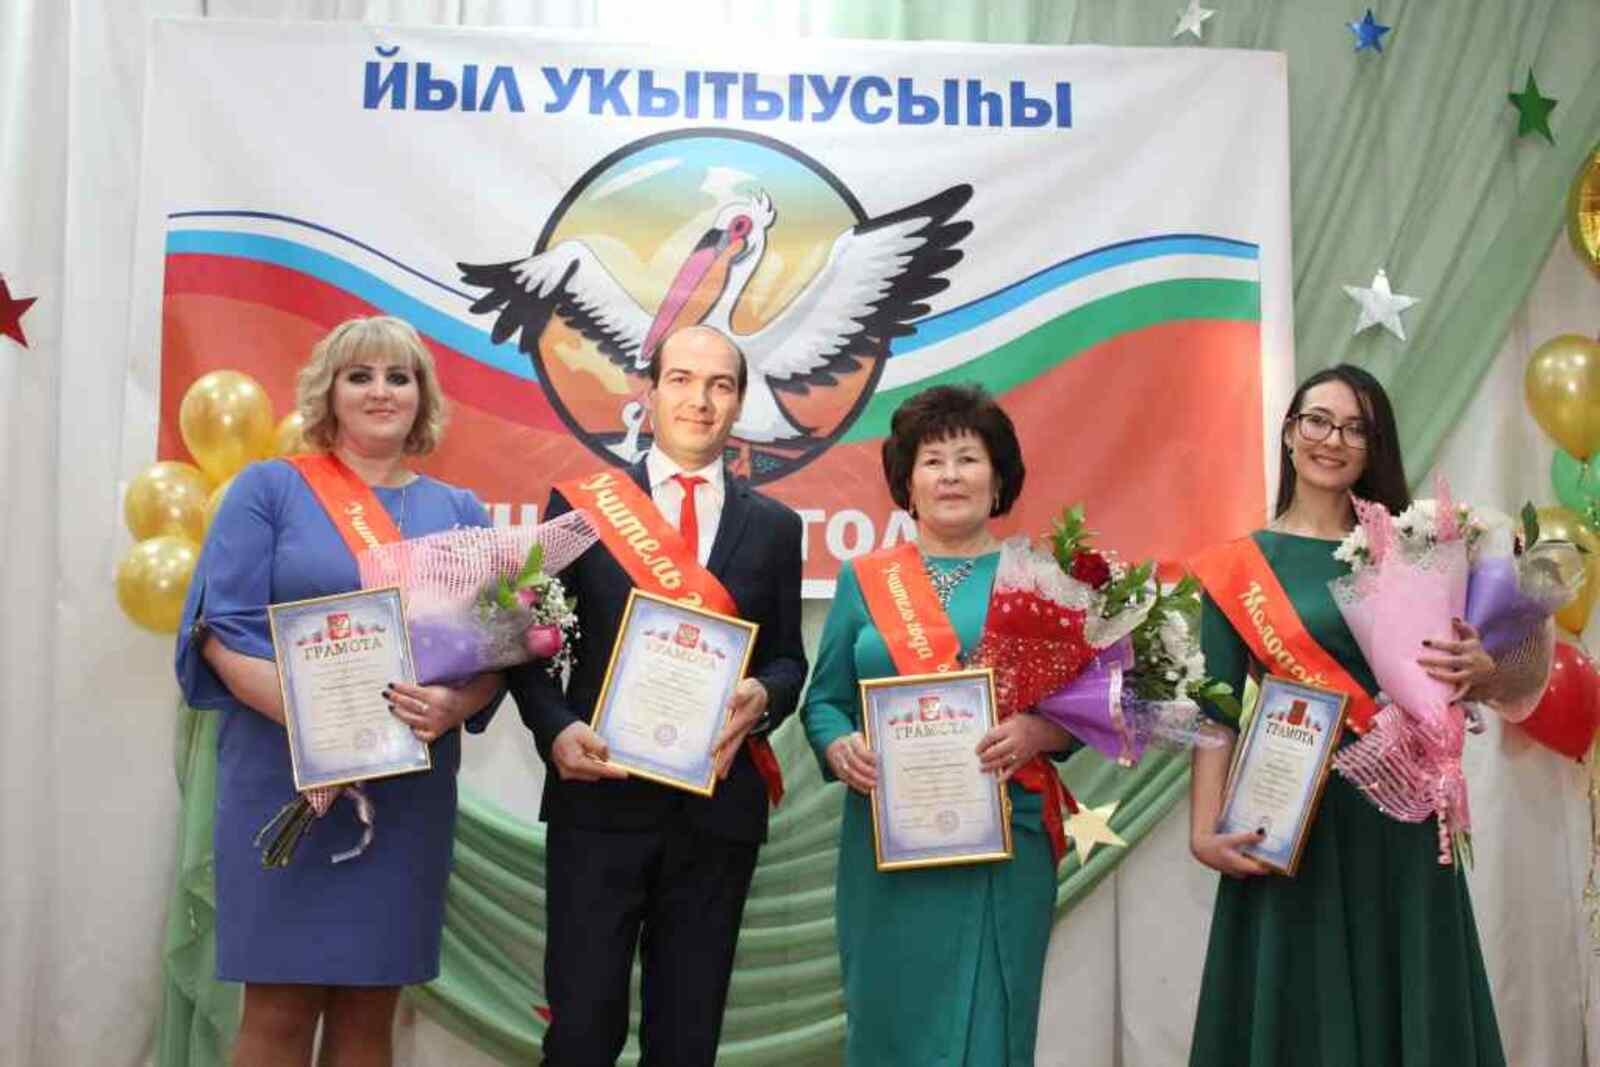 Победитель конкурса О. Николаев и призёры Н. Иванова, М. Маматкулова и А. Яркеева.